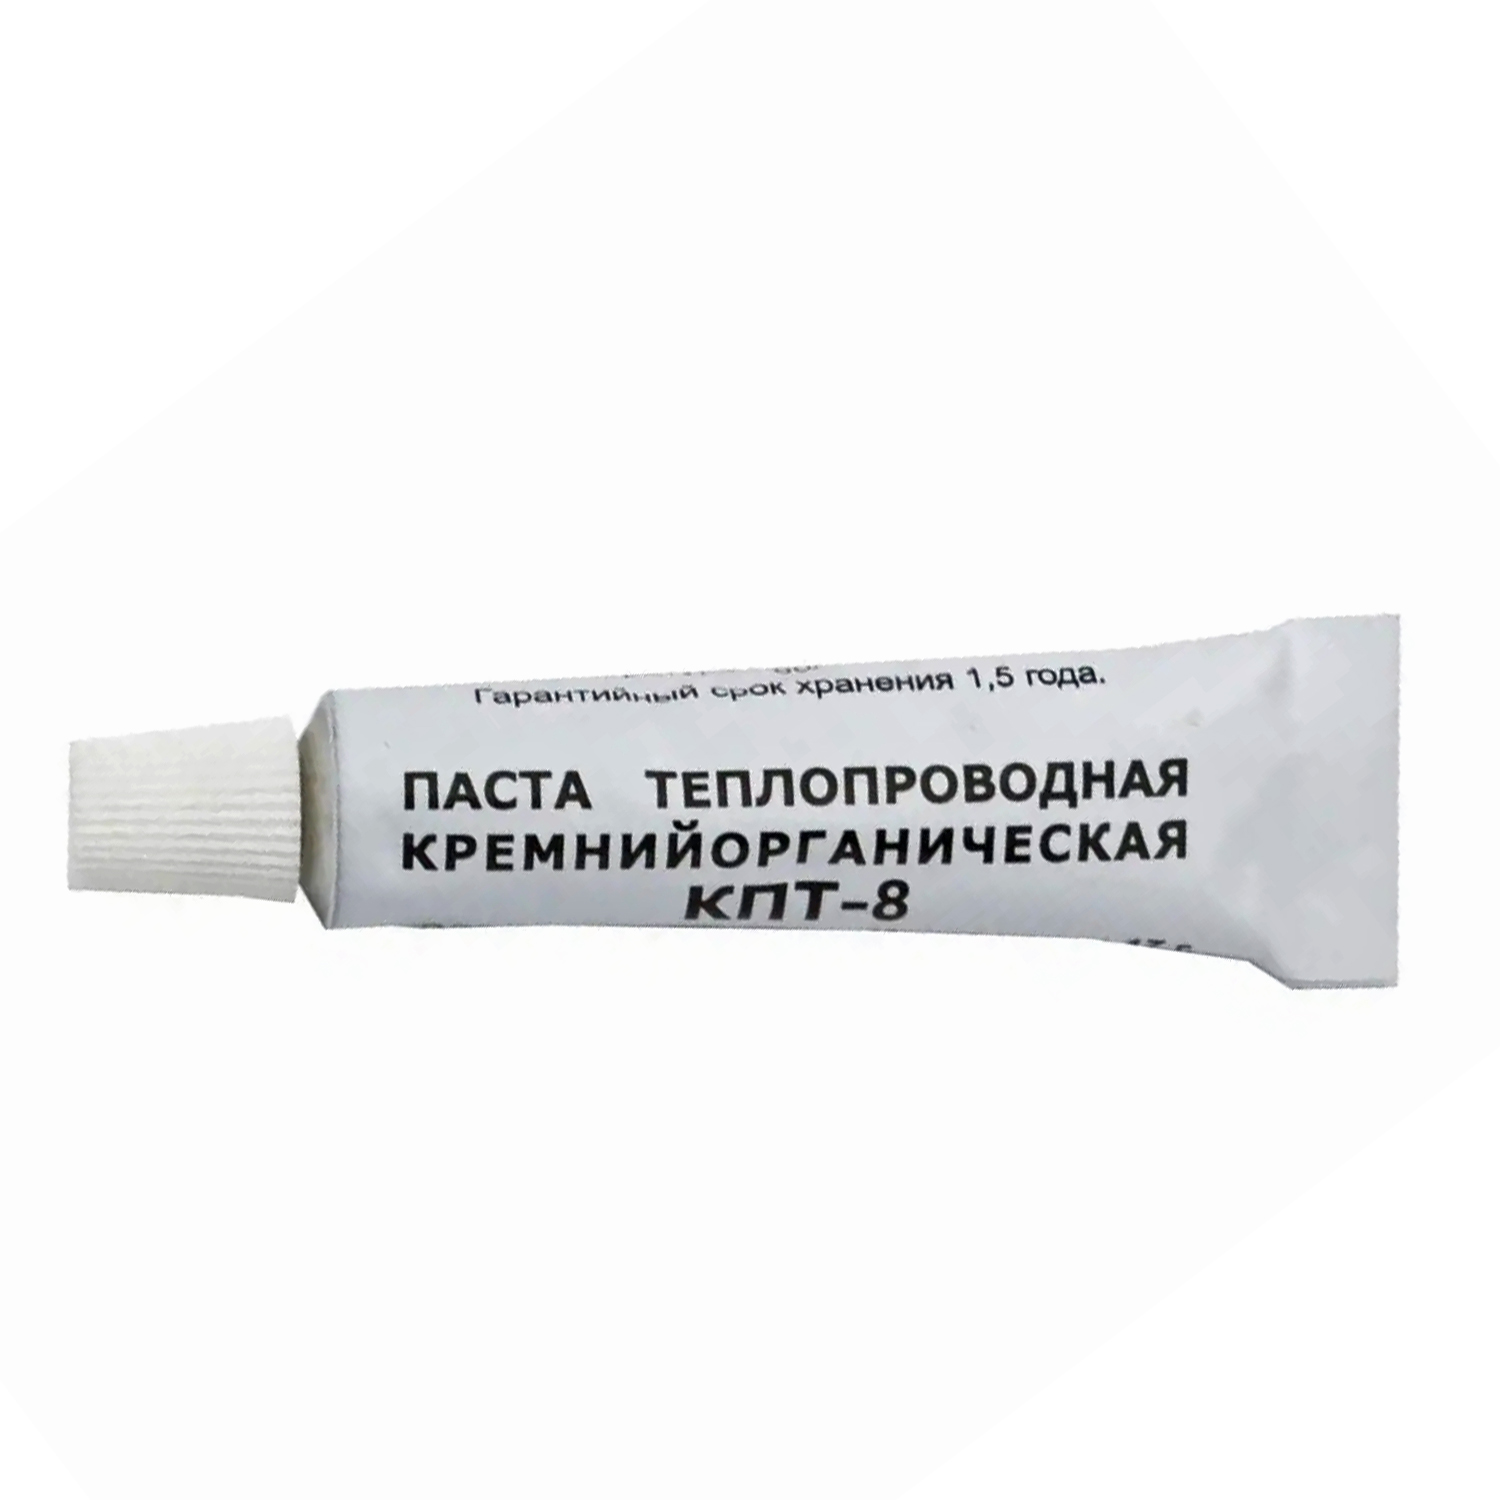 Паста теплопроводная кремнийорганическая КПТ-8 17 грамм., фото